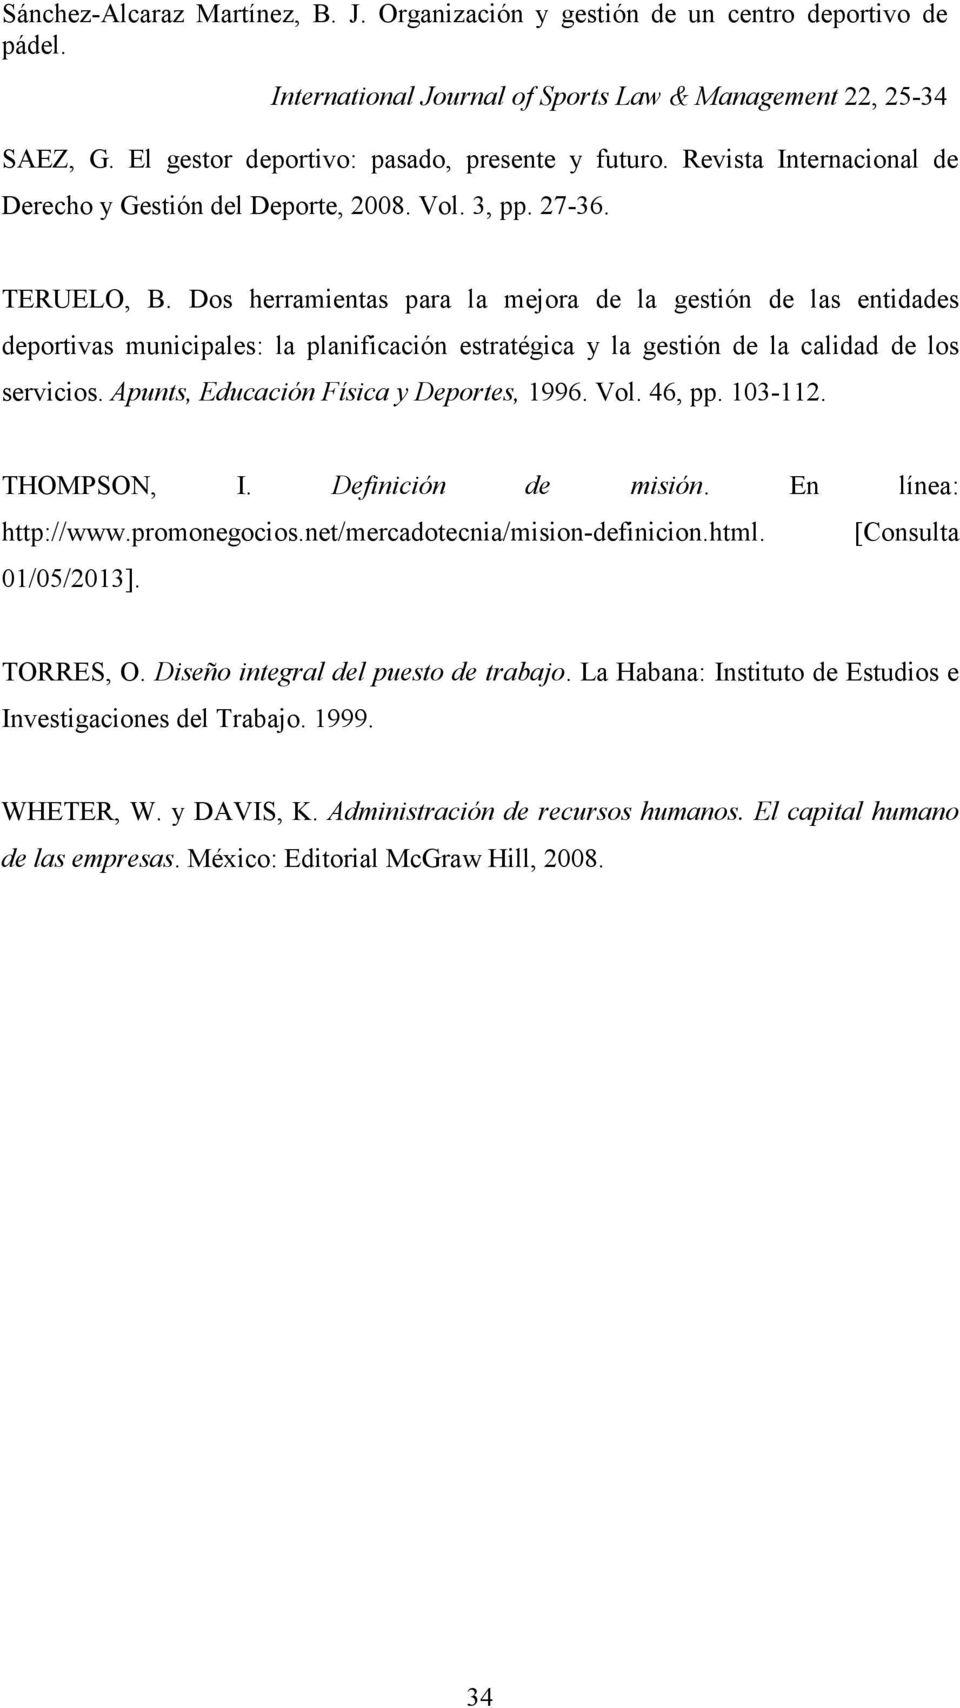 Apunts, Educación Física y Deportes, 1996. Vol. 46, pp. 103-112. THOMPSON, I. Definición de misión. En línea: http://www.promonegocios.net/mercadotecnia/mision-definicion.html.